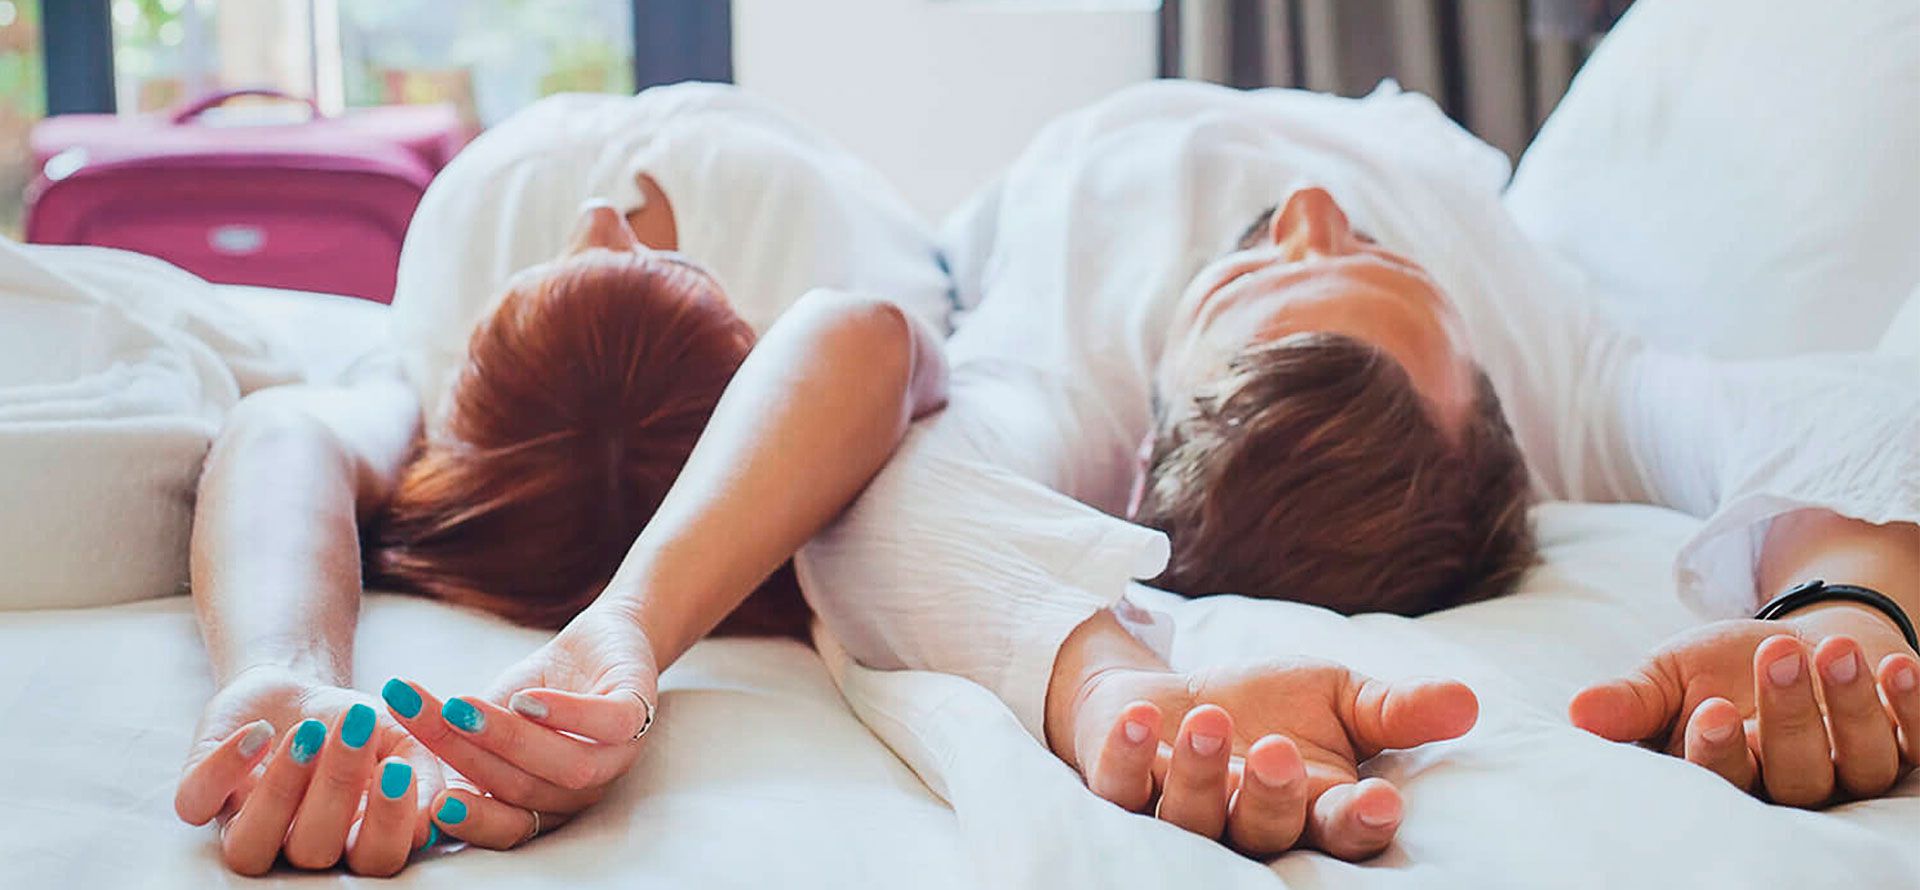 A couple lies on a mattress after a trip.